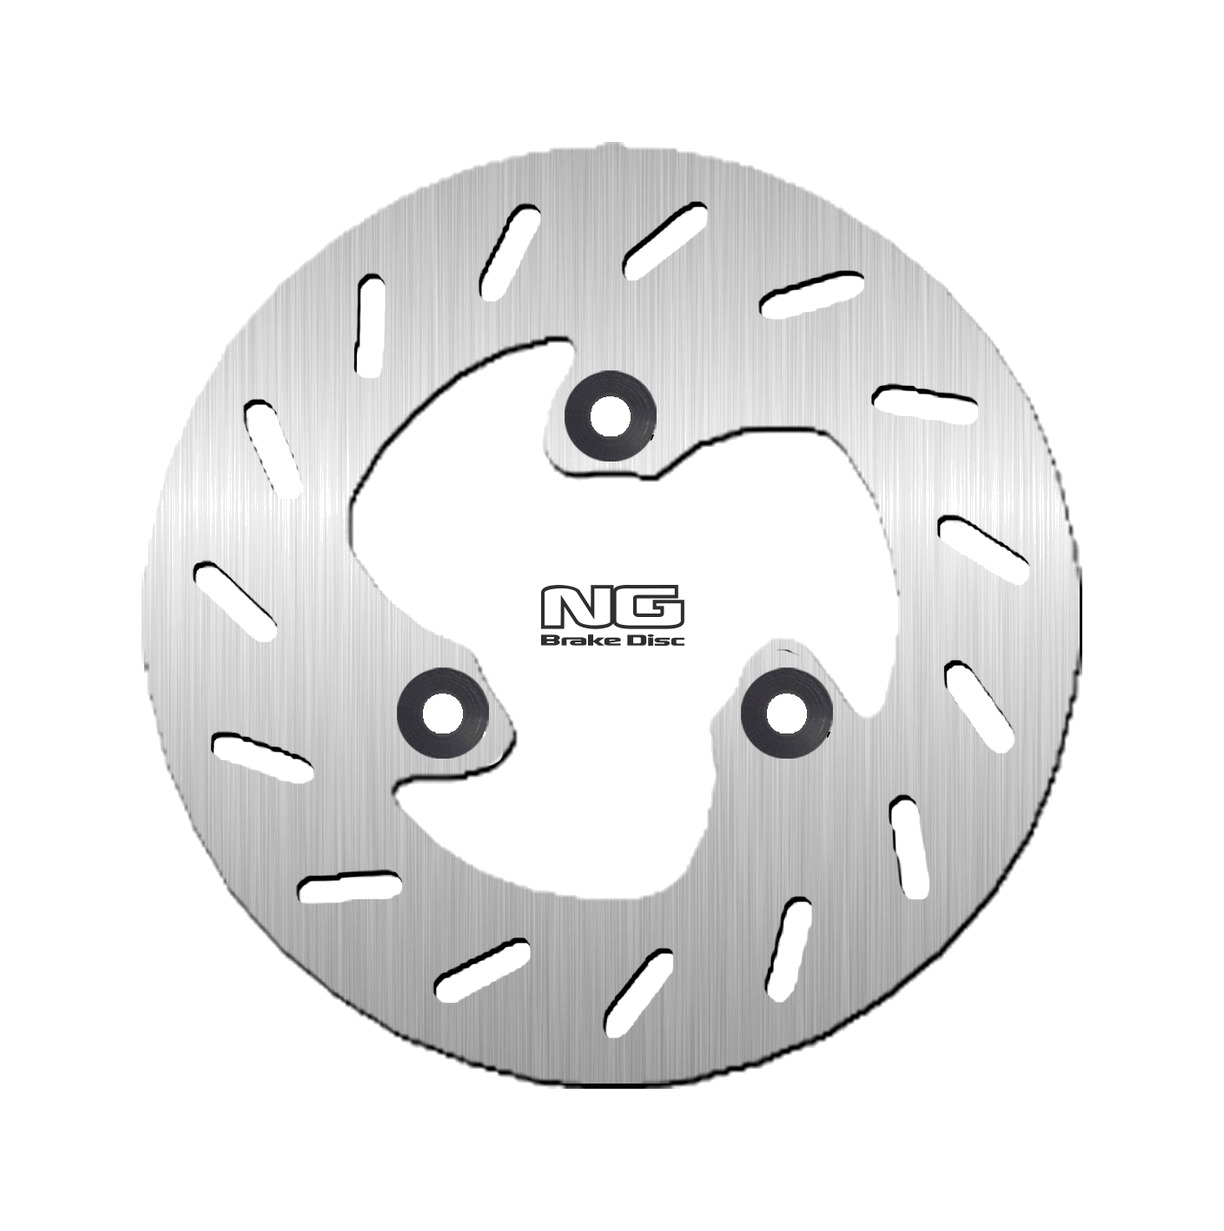 NG Brake Disk Hinterradbremsscheibe für runde Montage, 190 mm Durchmesser und 3 - Bild 1 von 1